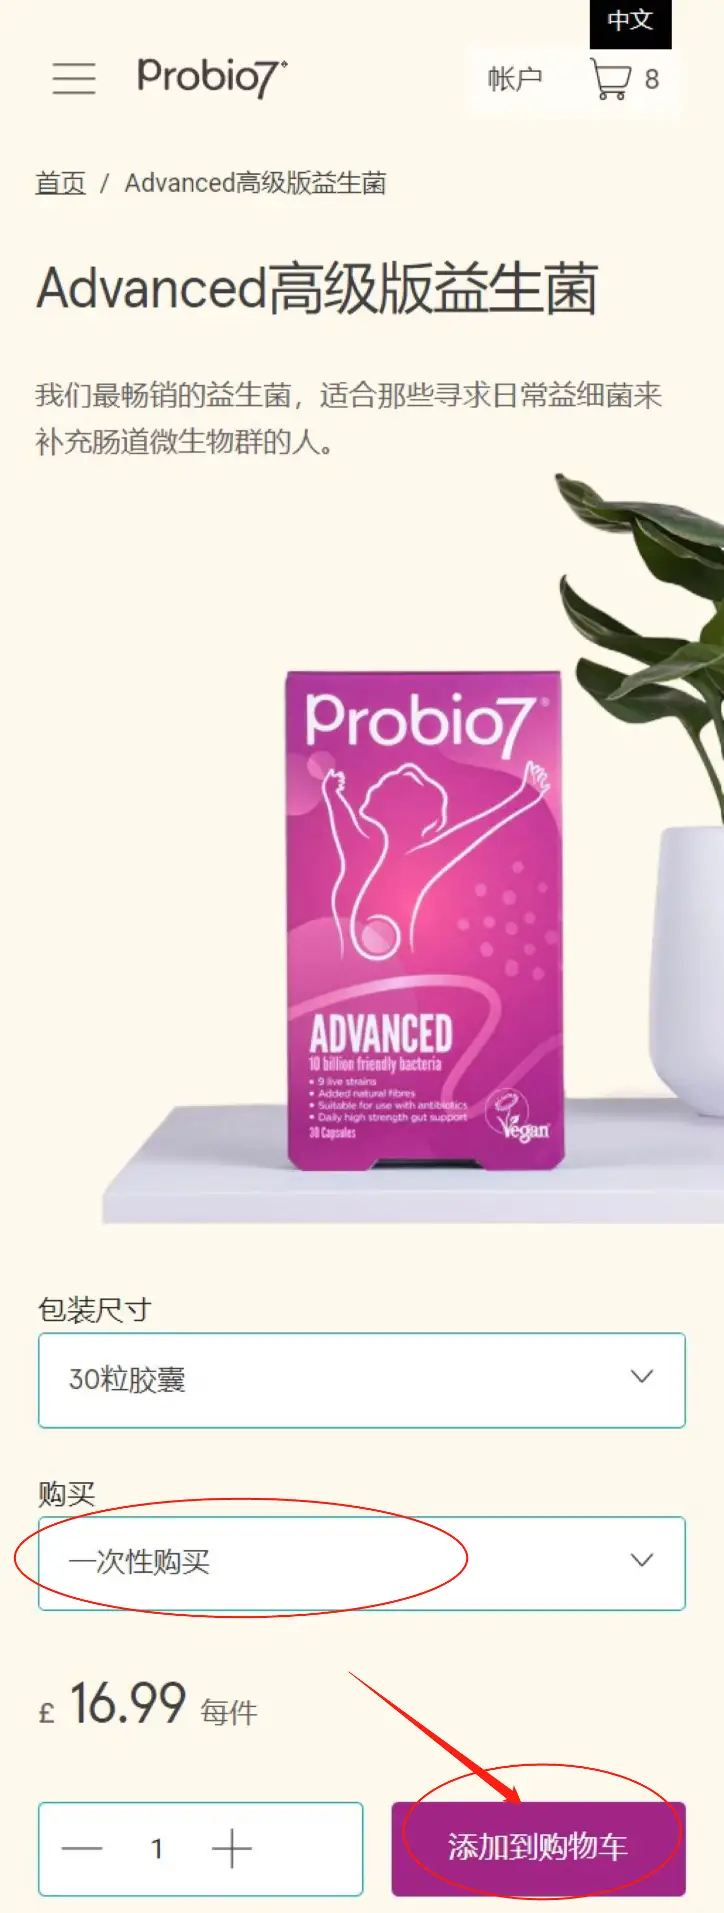 Probio7 Mobile ADVANCED加强版益生菌